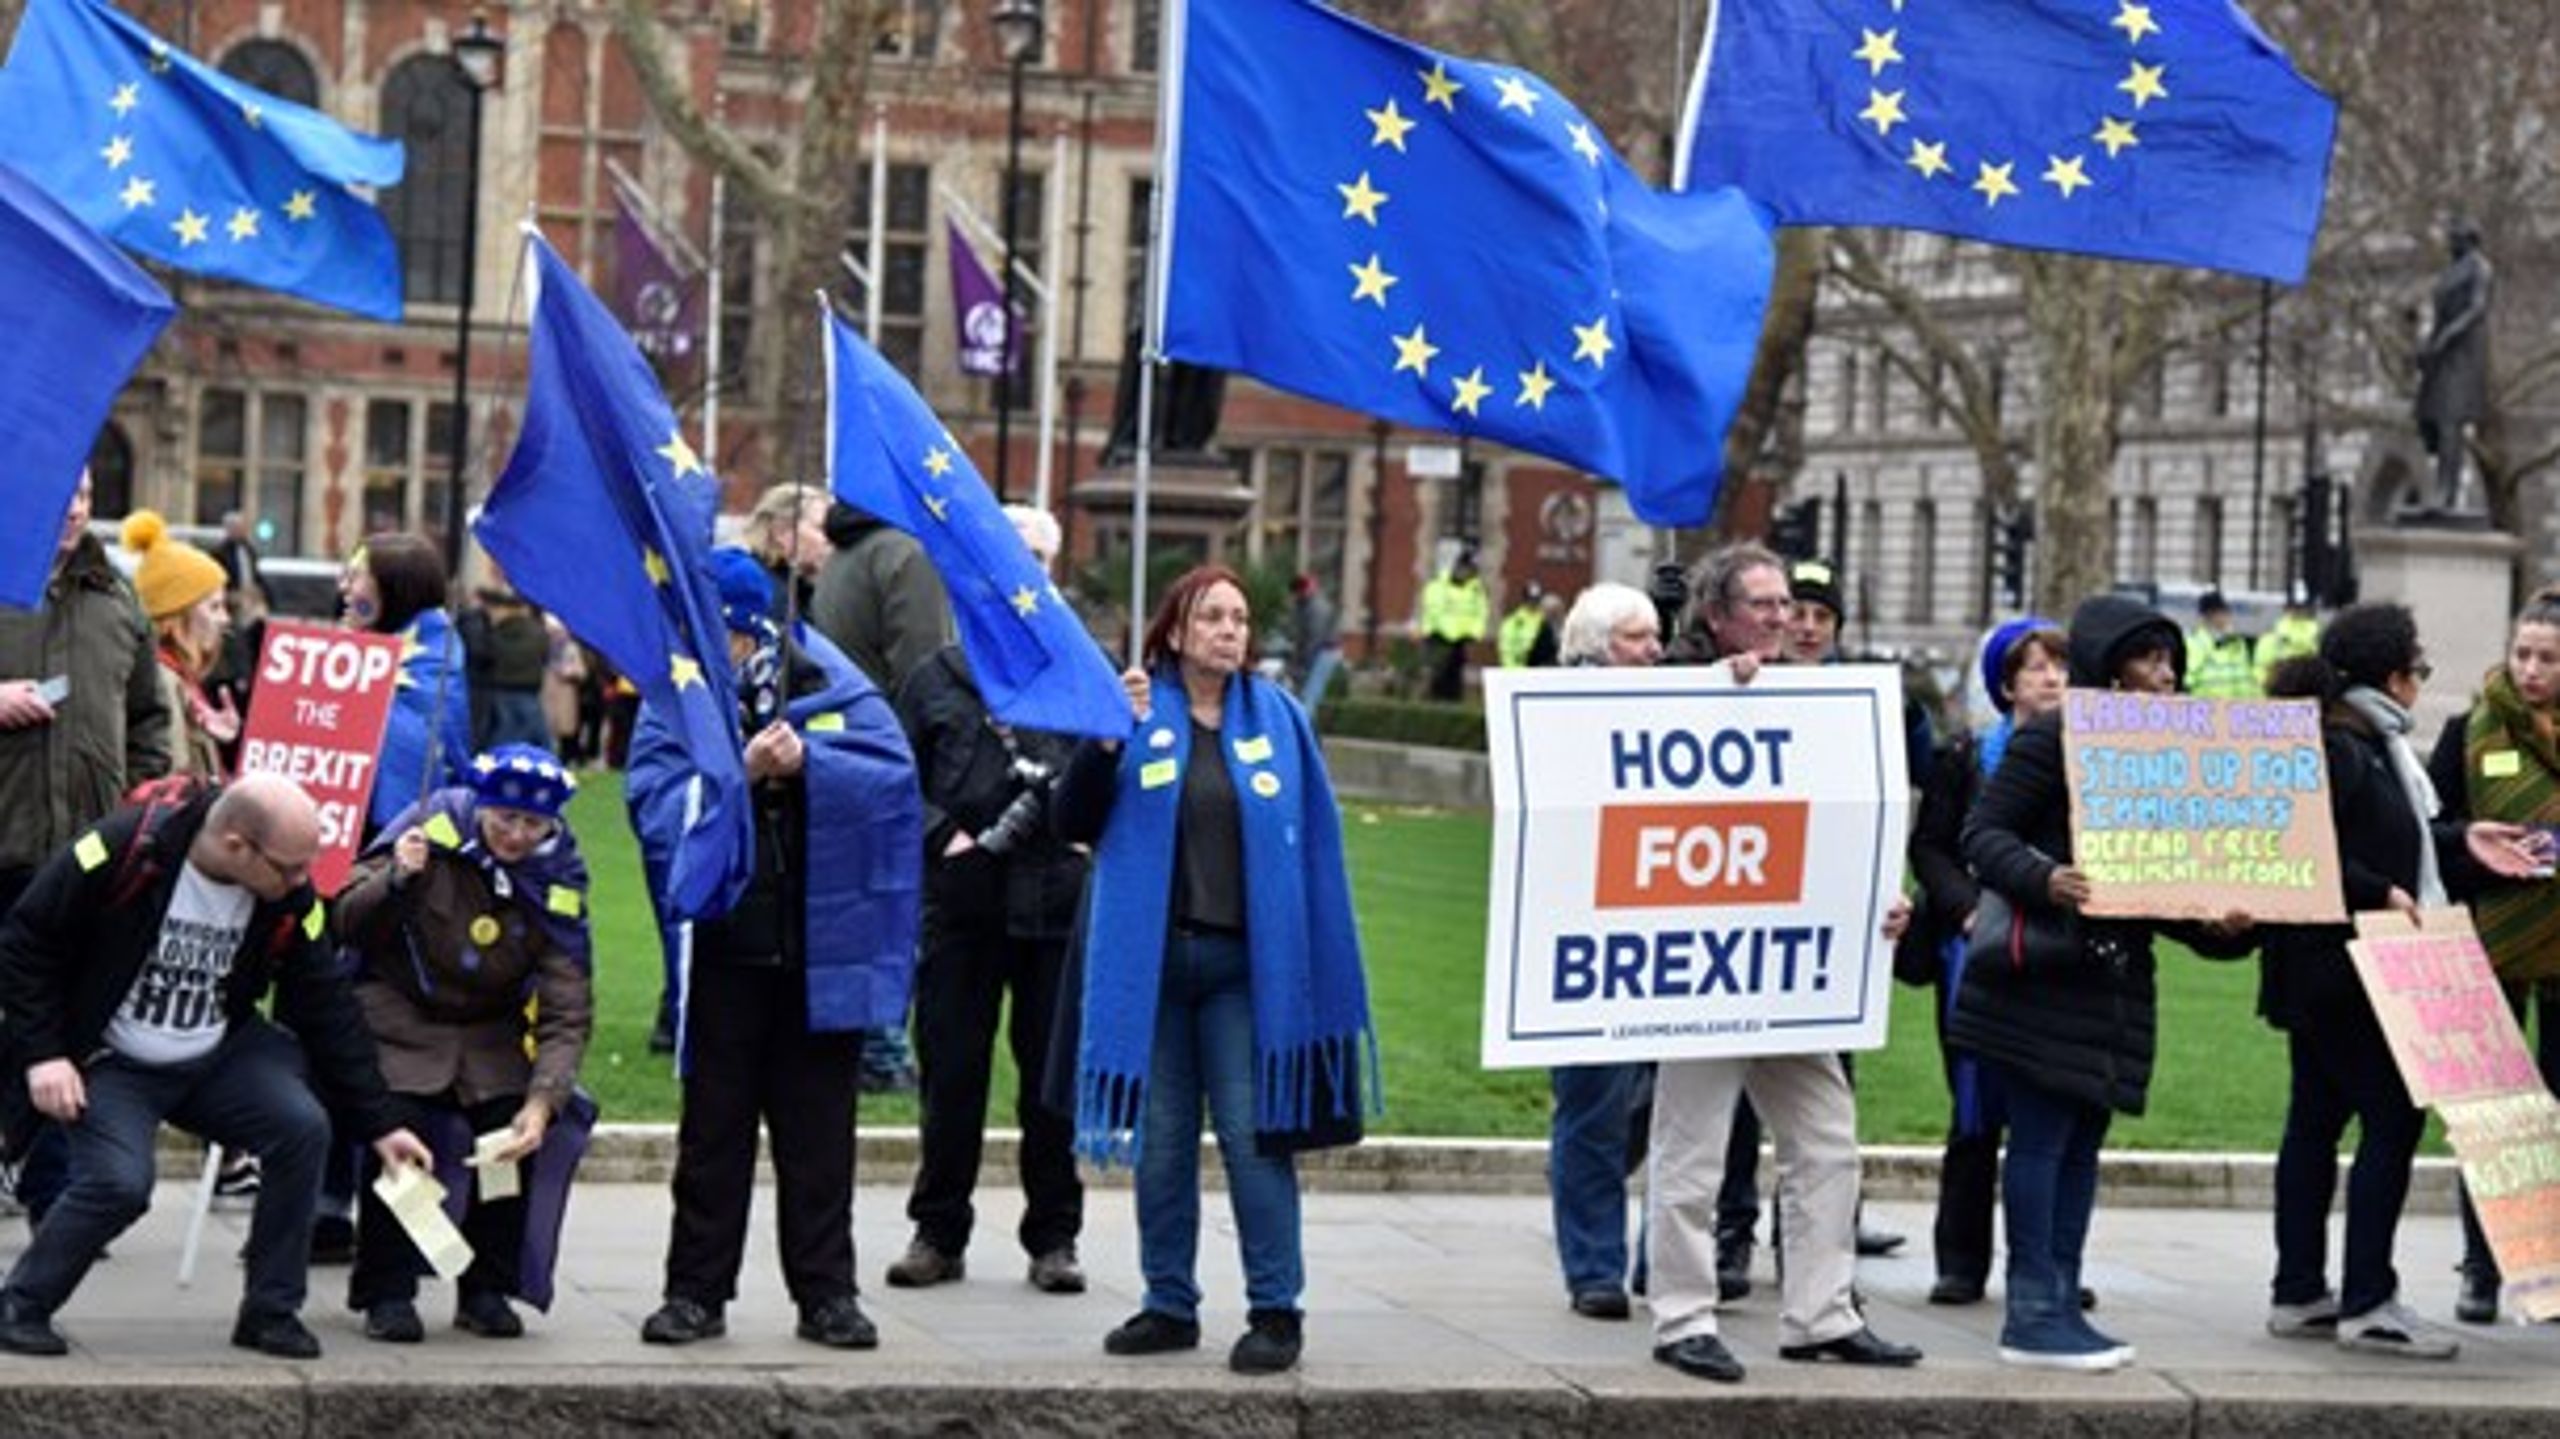 Nye forhandlinger om forholdet mellem Storbritannien og EU kan være på vej, hvis det britiske underhus kan blive enige om en fælles britisk position. (Foto: Niklas Svahn/TT/Ritzau Scanpix)